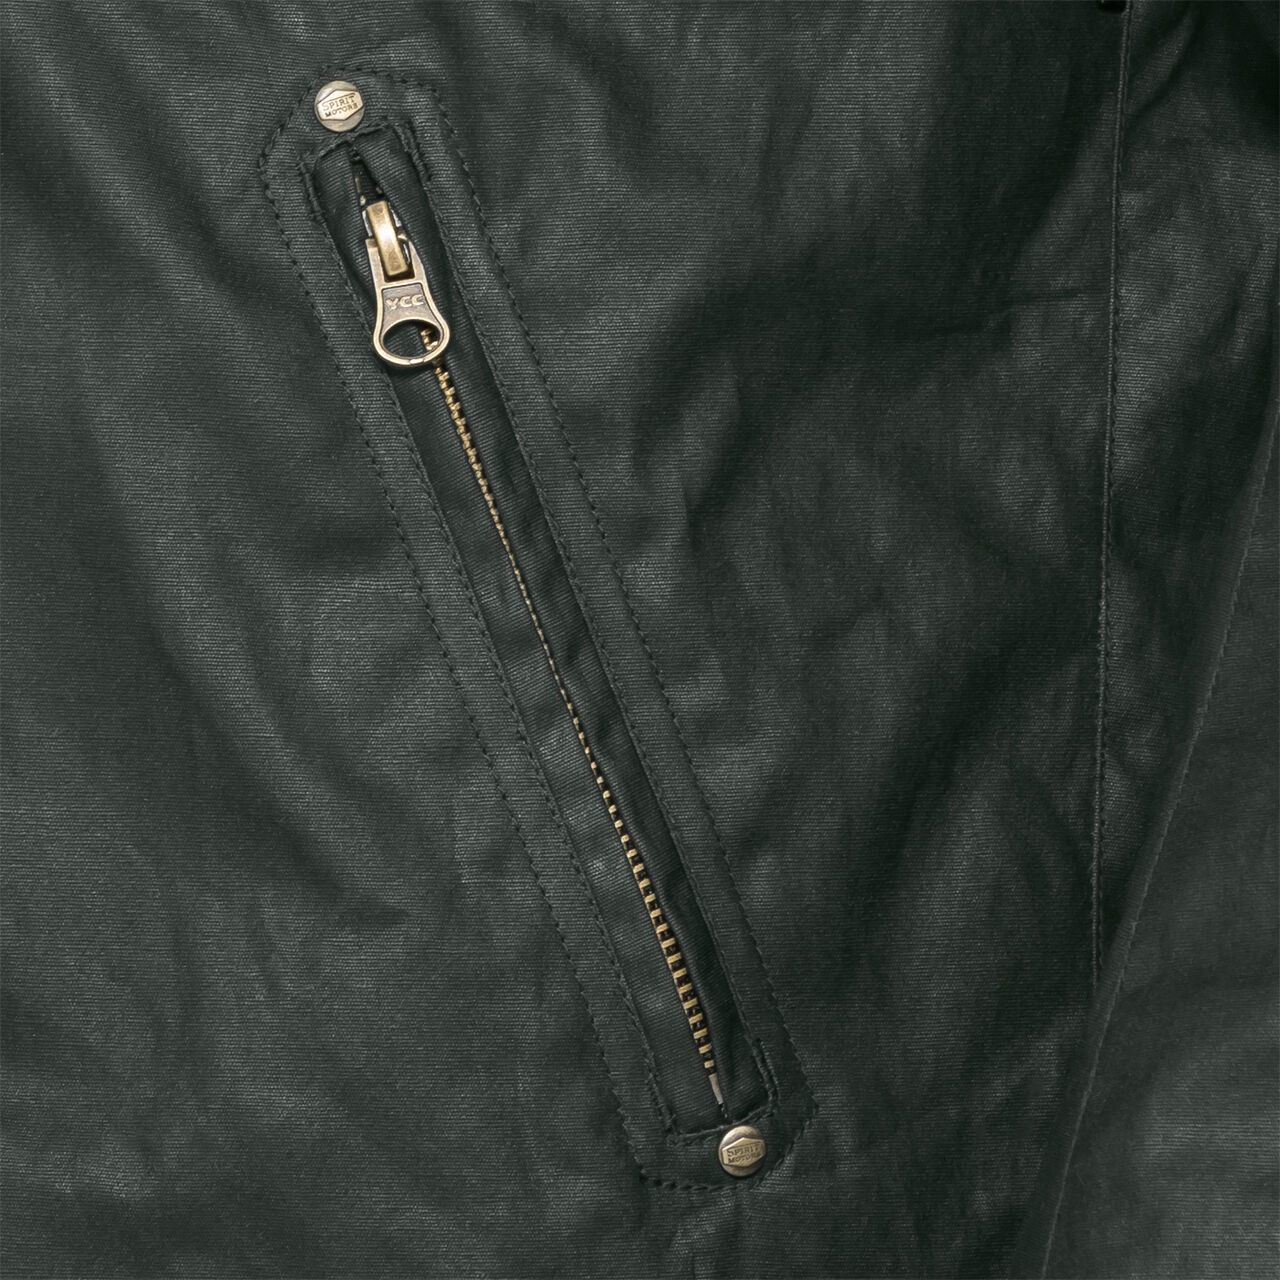 Retro style textile jacket 1.0 green